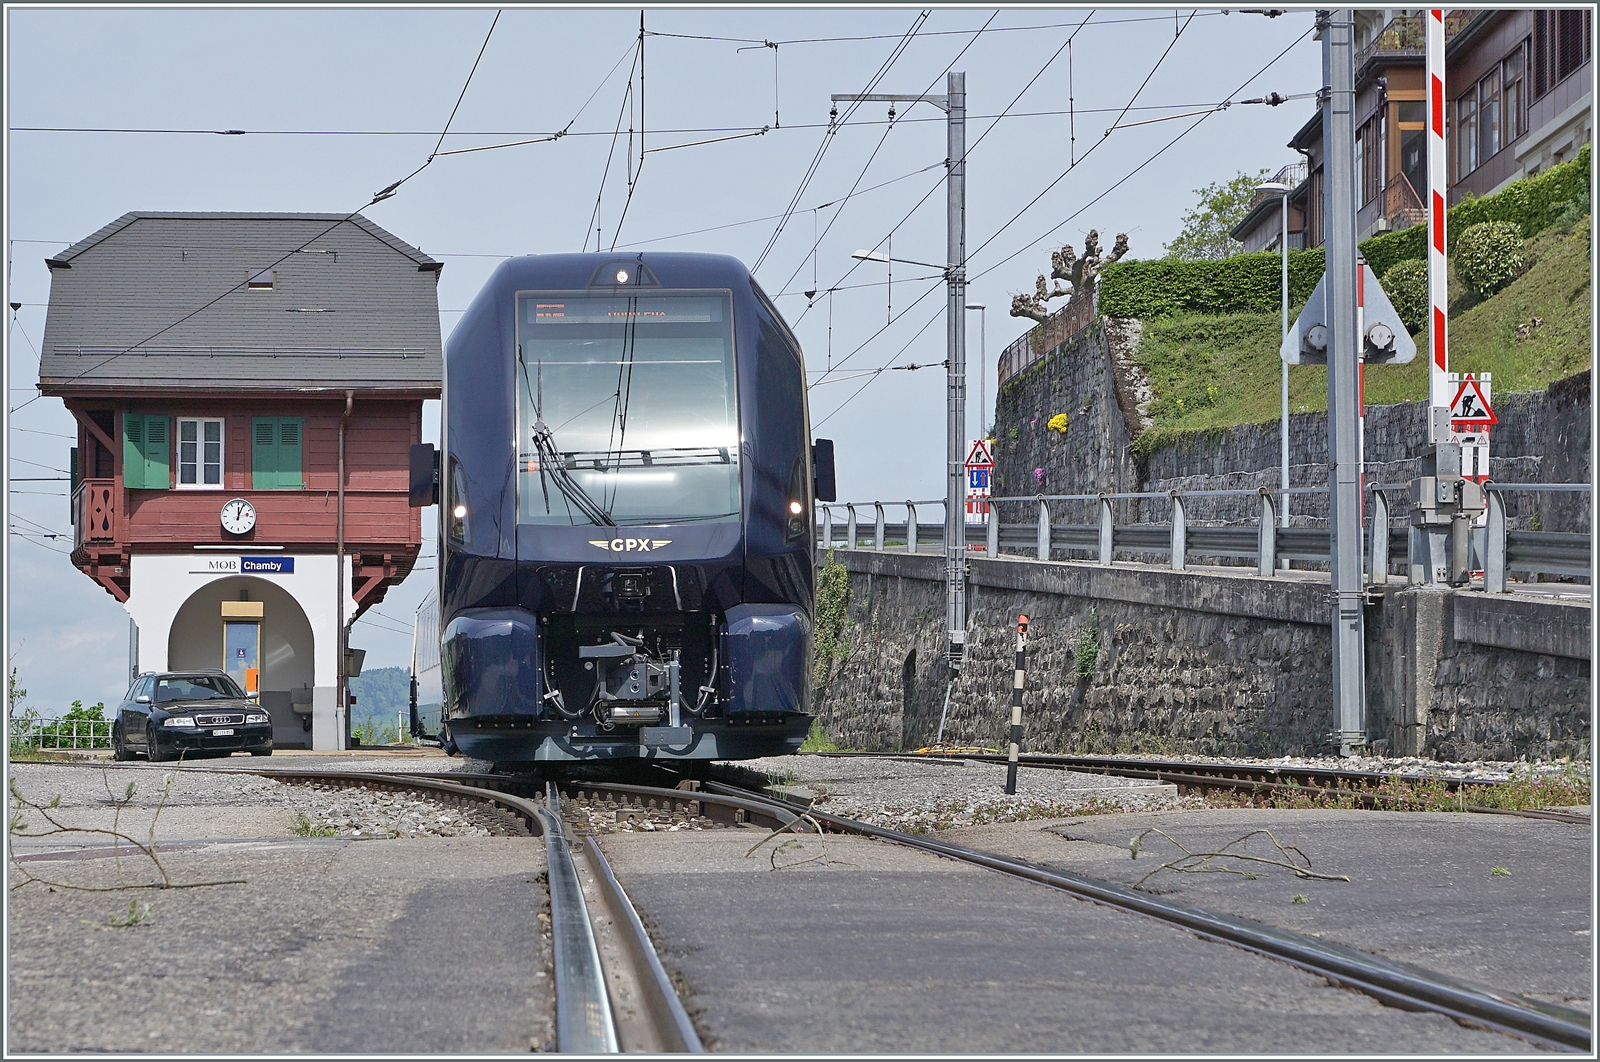 Der MOB GPX 4065 von Zweisimmen nach Montreux mit der schiebenden Ge 4/4 8004 muss in Chamby den Gegenzug abwarten und ermöglich dadurch dieses Bild. Der Fotostandort ist auf der Strasse und wie rechts im Bild zu sehen ist, bei geöffneter Schranke.

6. Mai 2023